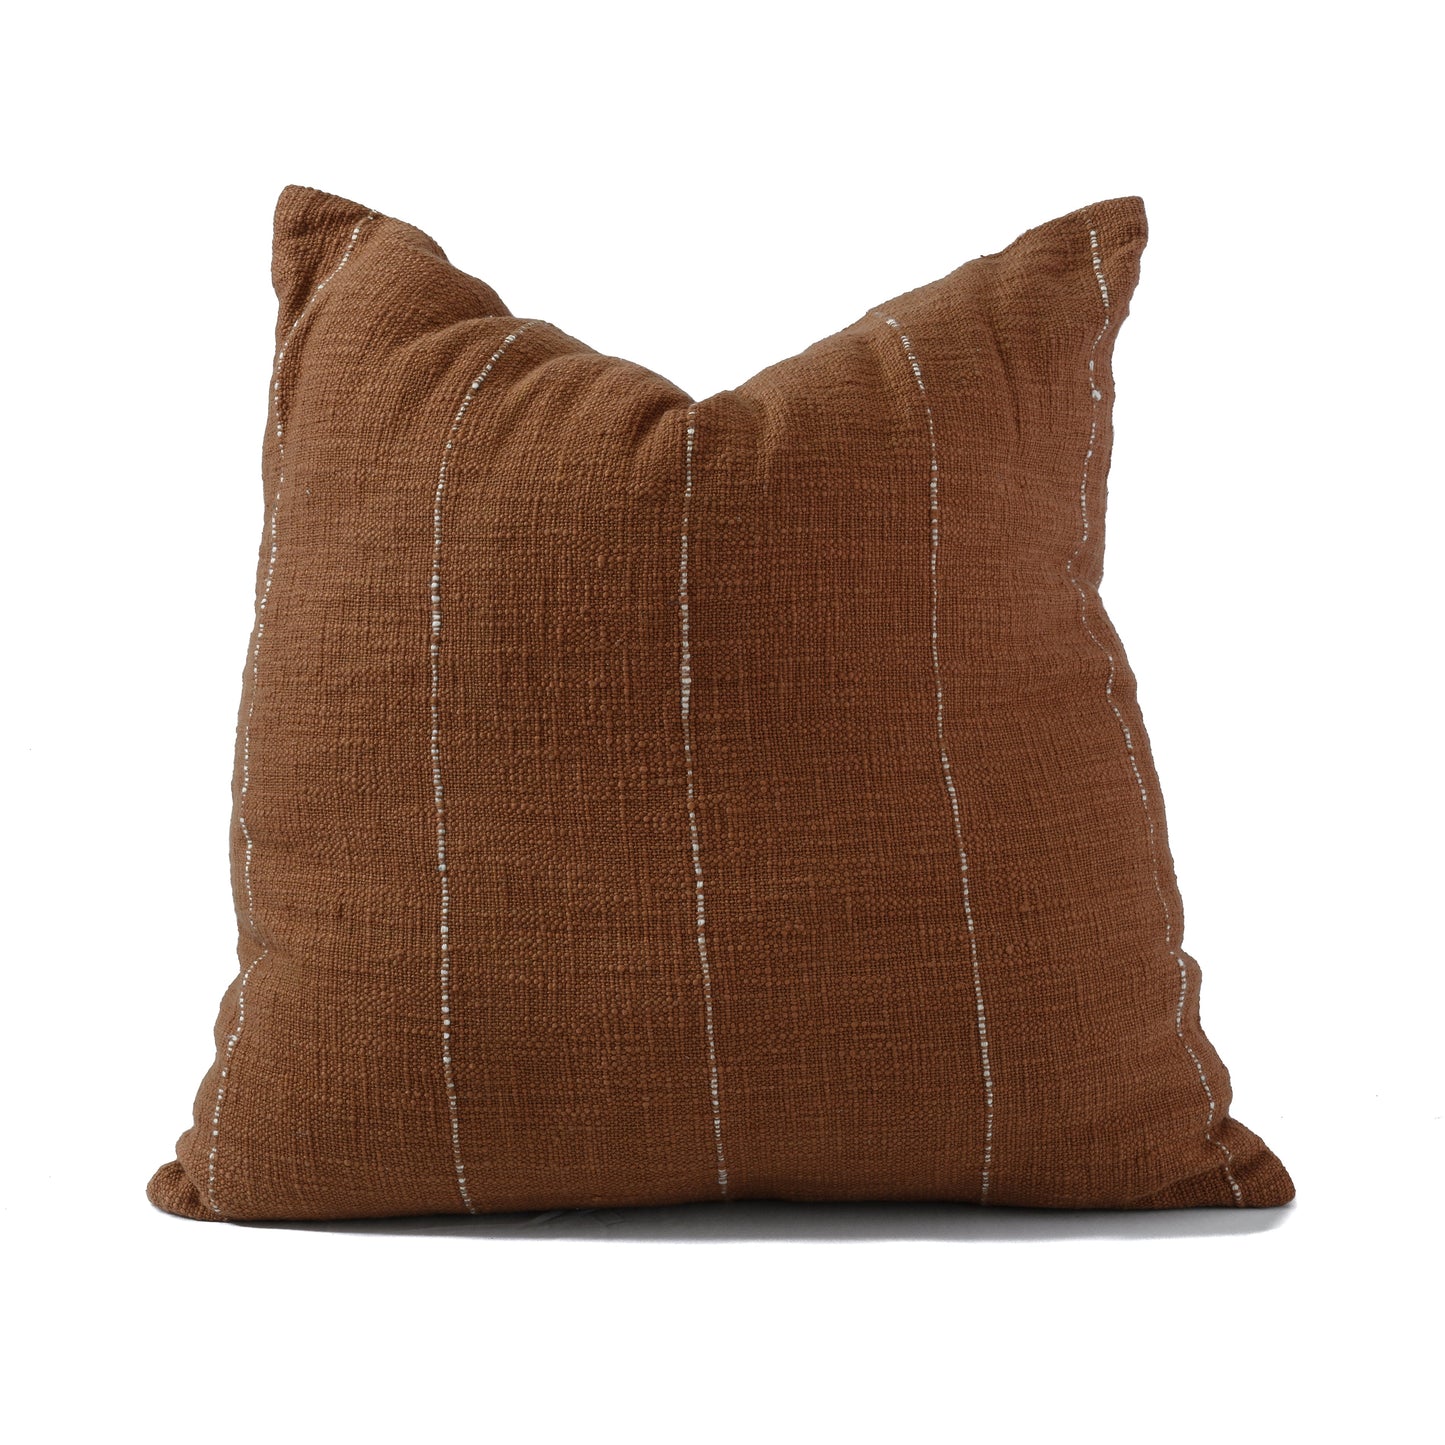 Hand woven Terracotta Sham cotton cushion cover